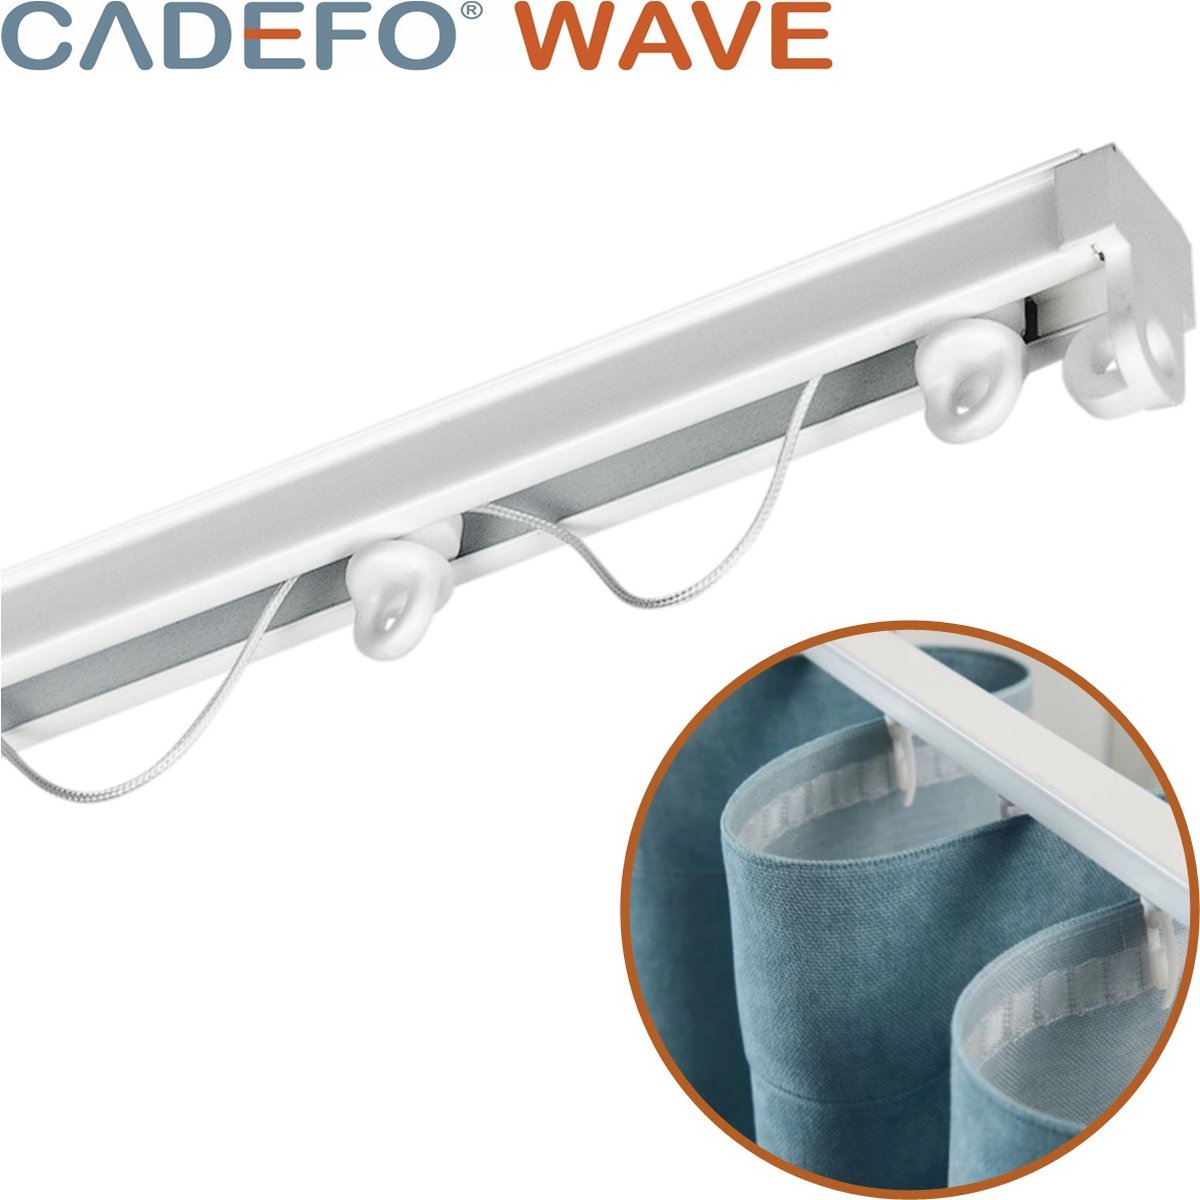 CADEFO WAVE (501 - 550 cm) Gordijnrails - Compleet op maat! - UIT 1 STUK - Leverbaar tot 6 meter - Plafondbevestiging - Lengte 549 cm